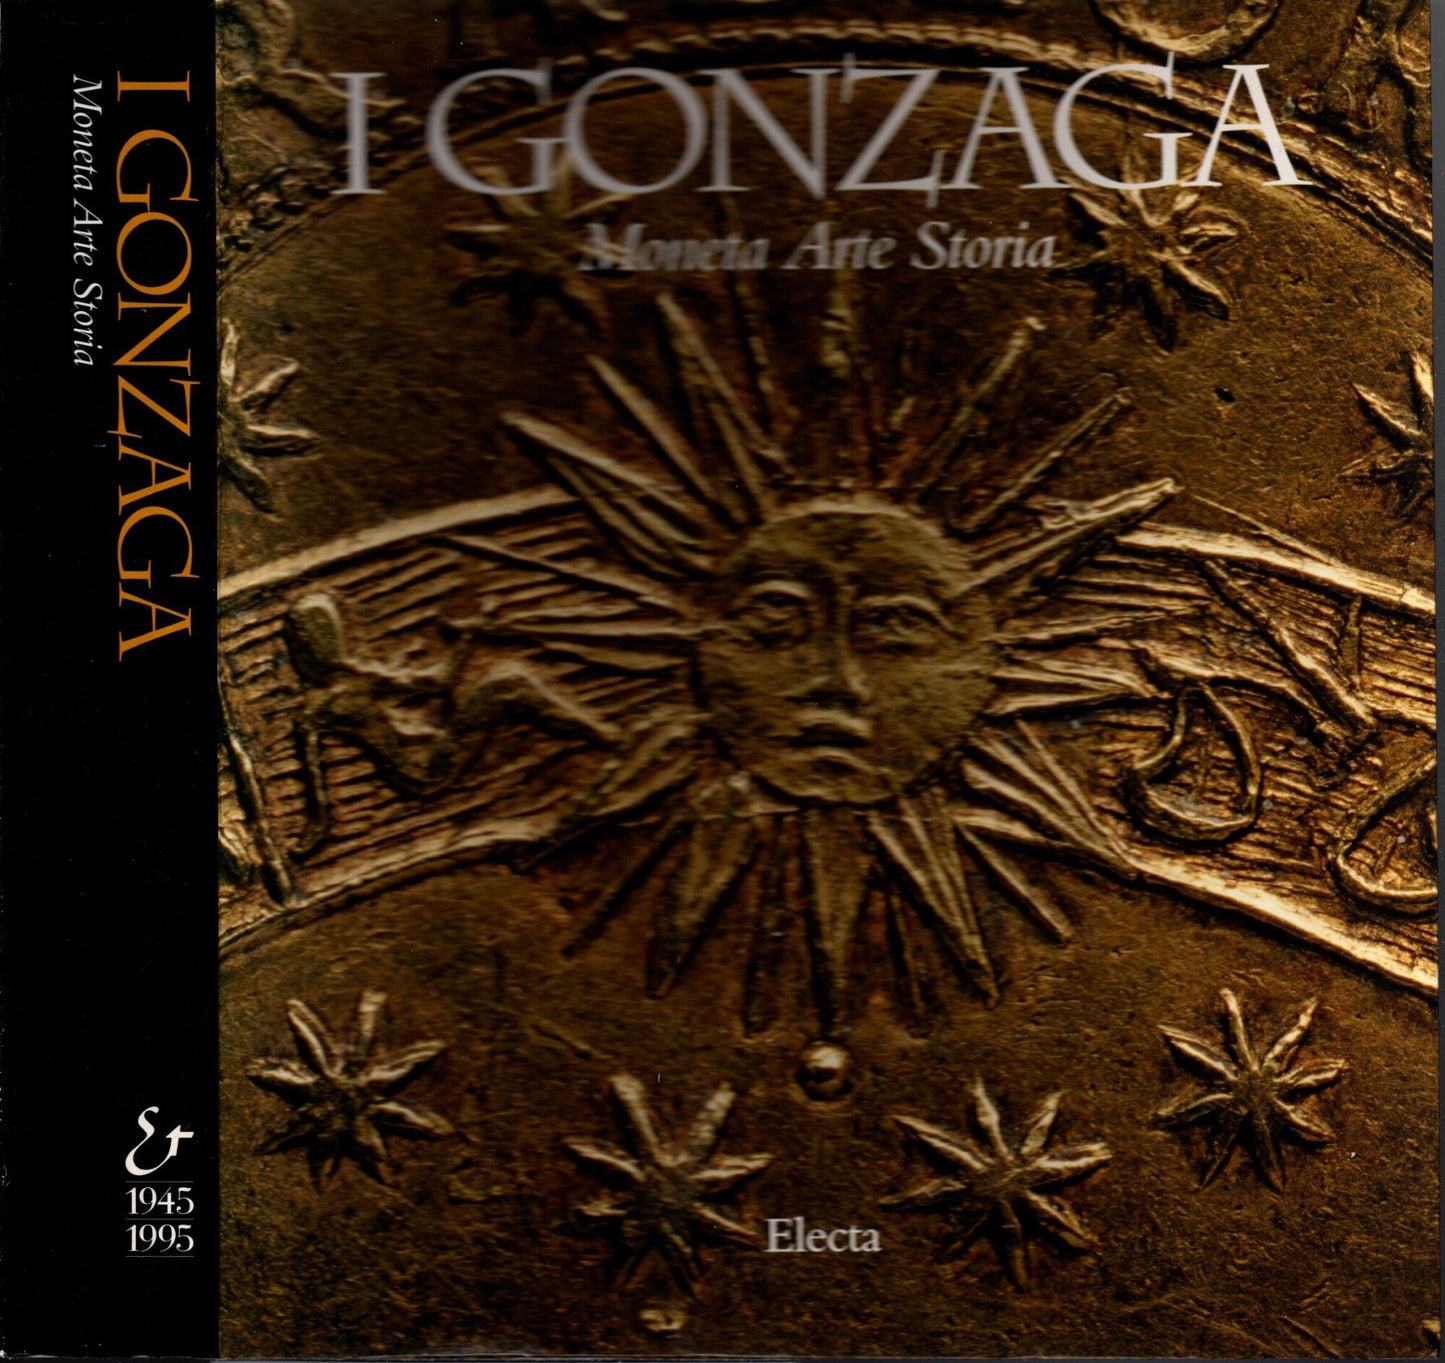 I Gonzaga. Moneta, arte, storia. Catalogo della mostra (Mantova, 1995). Ediz. illustrata